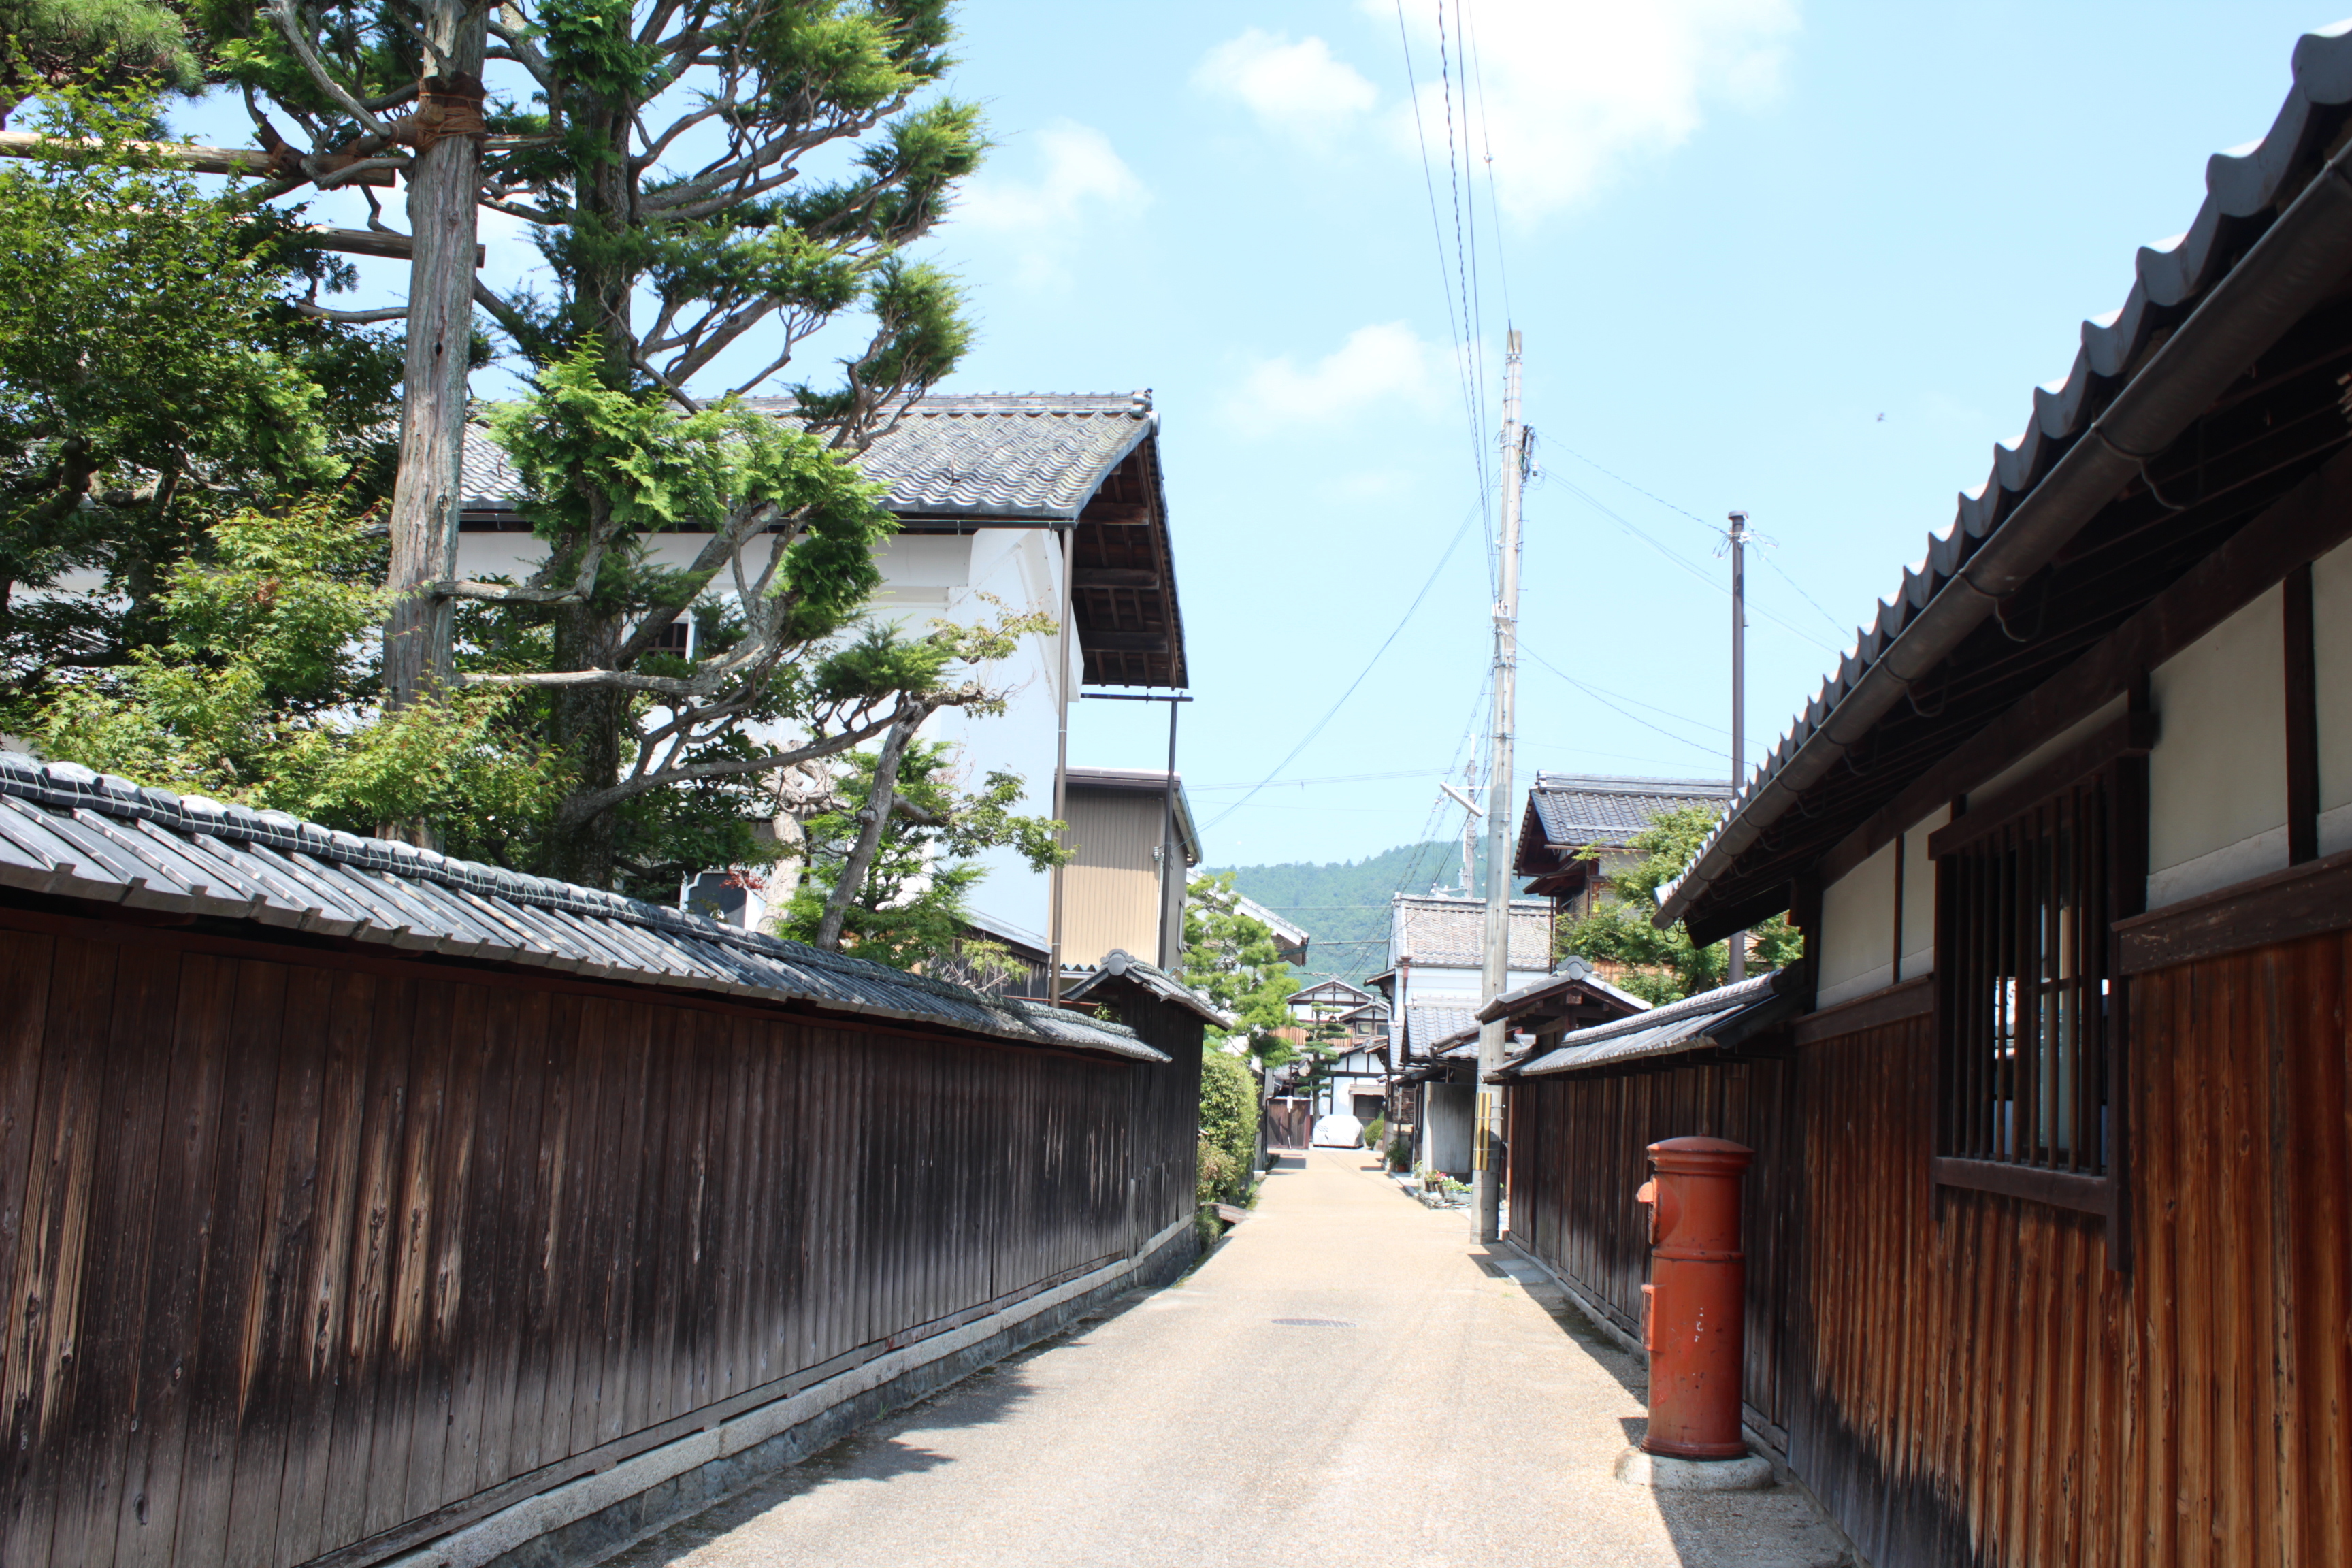 五個荘金堂町の通りに面した家々の風景写真です。